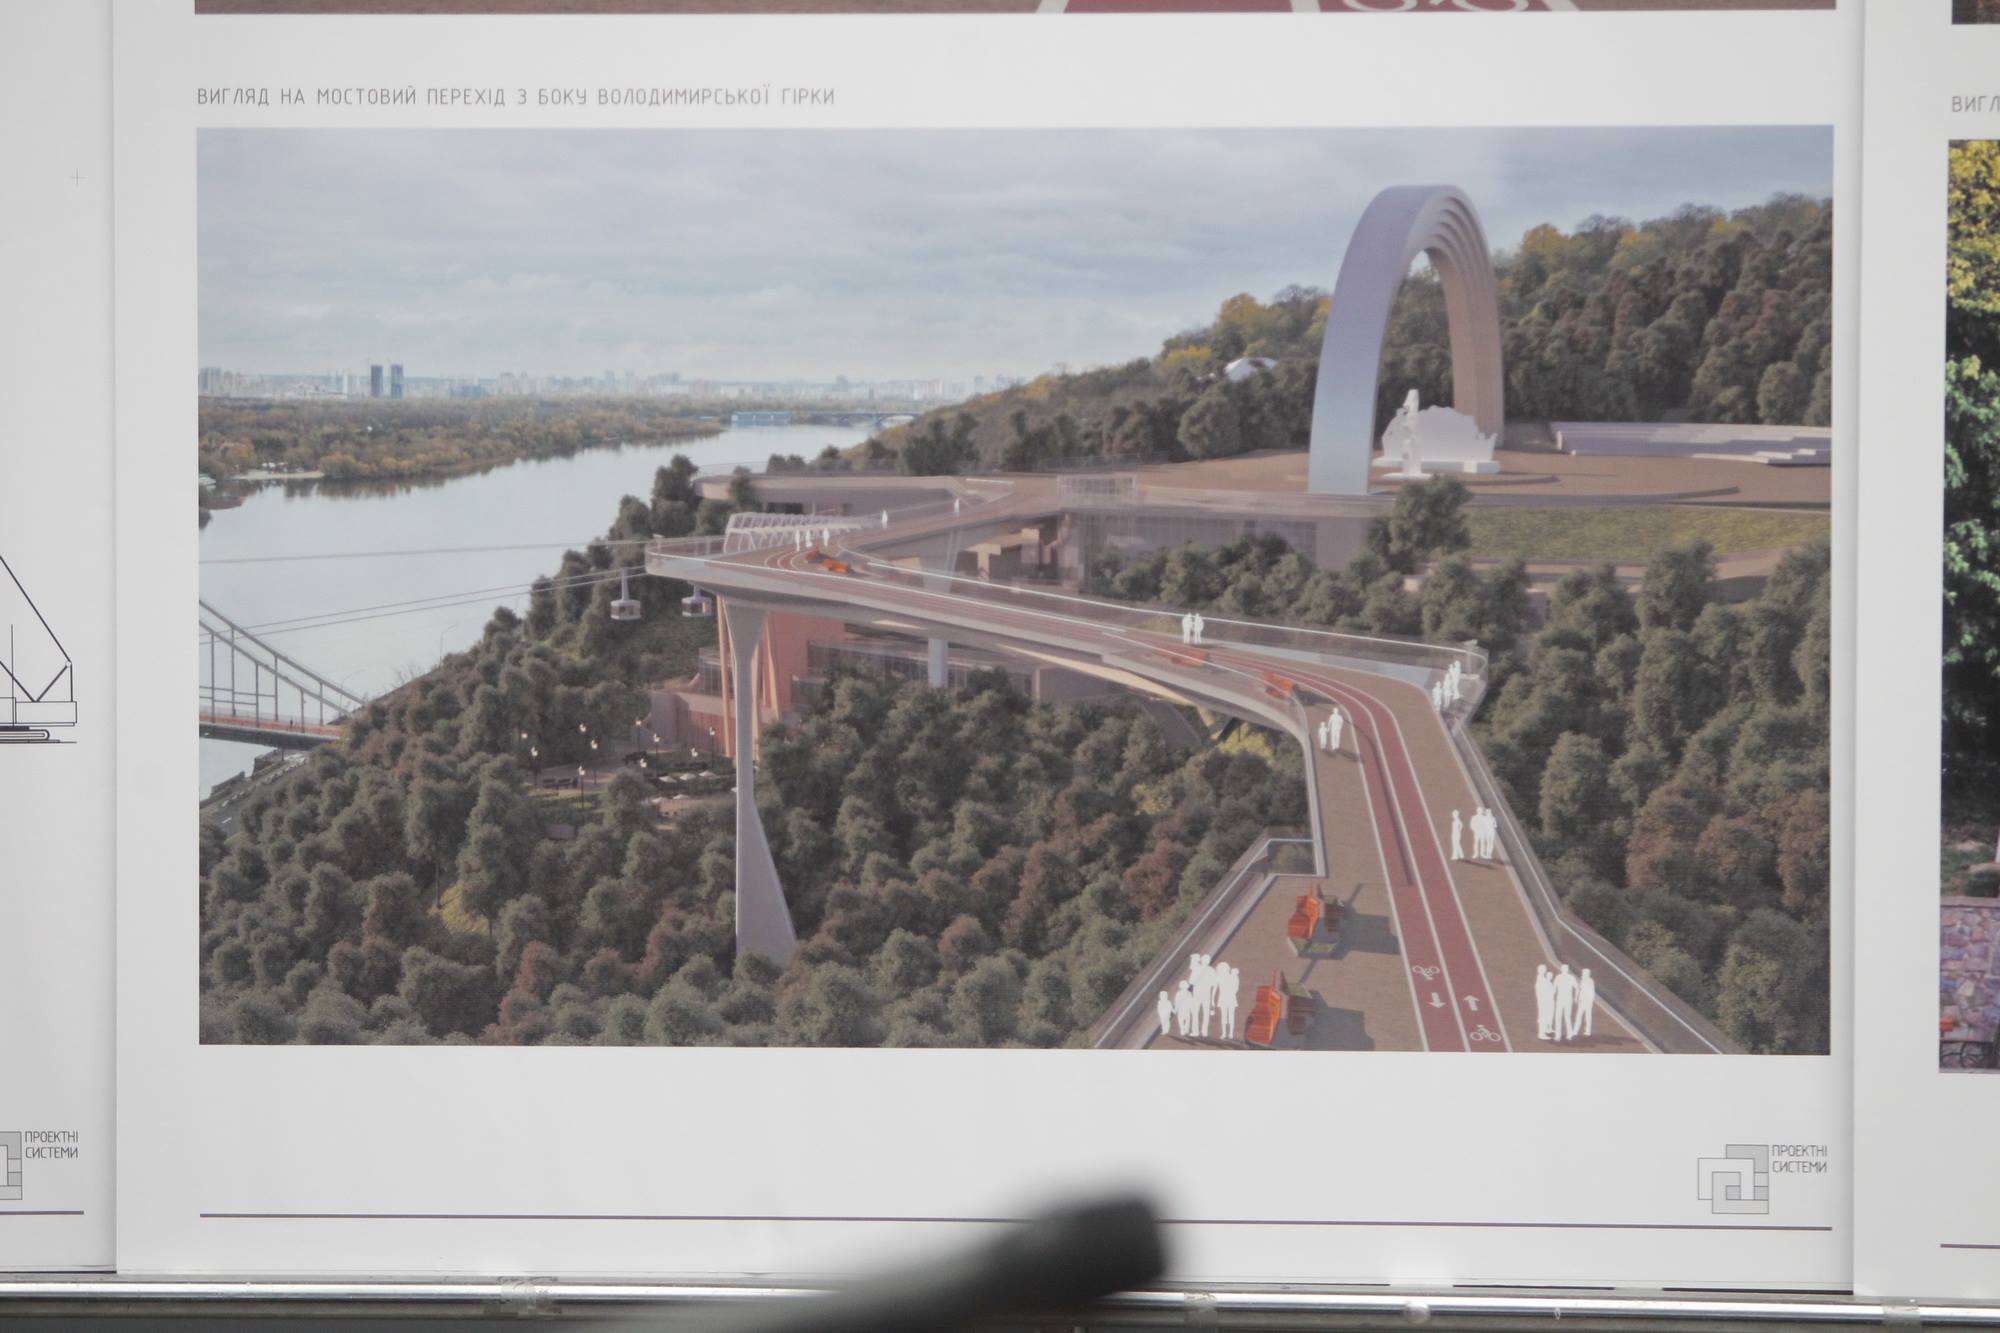 В КГГА одобрили проект строительства в столице воздушного моста, но киевляне не обрадовались (фото)